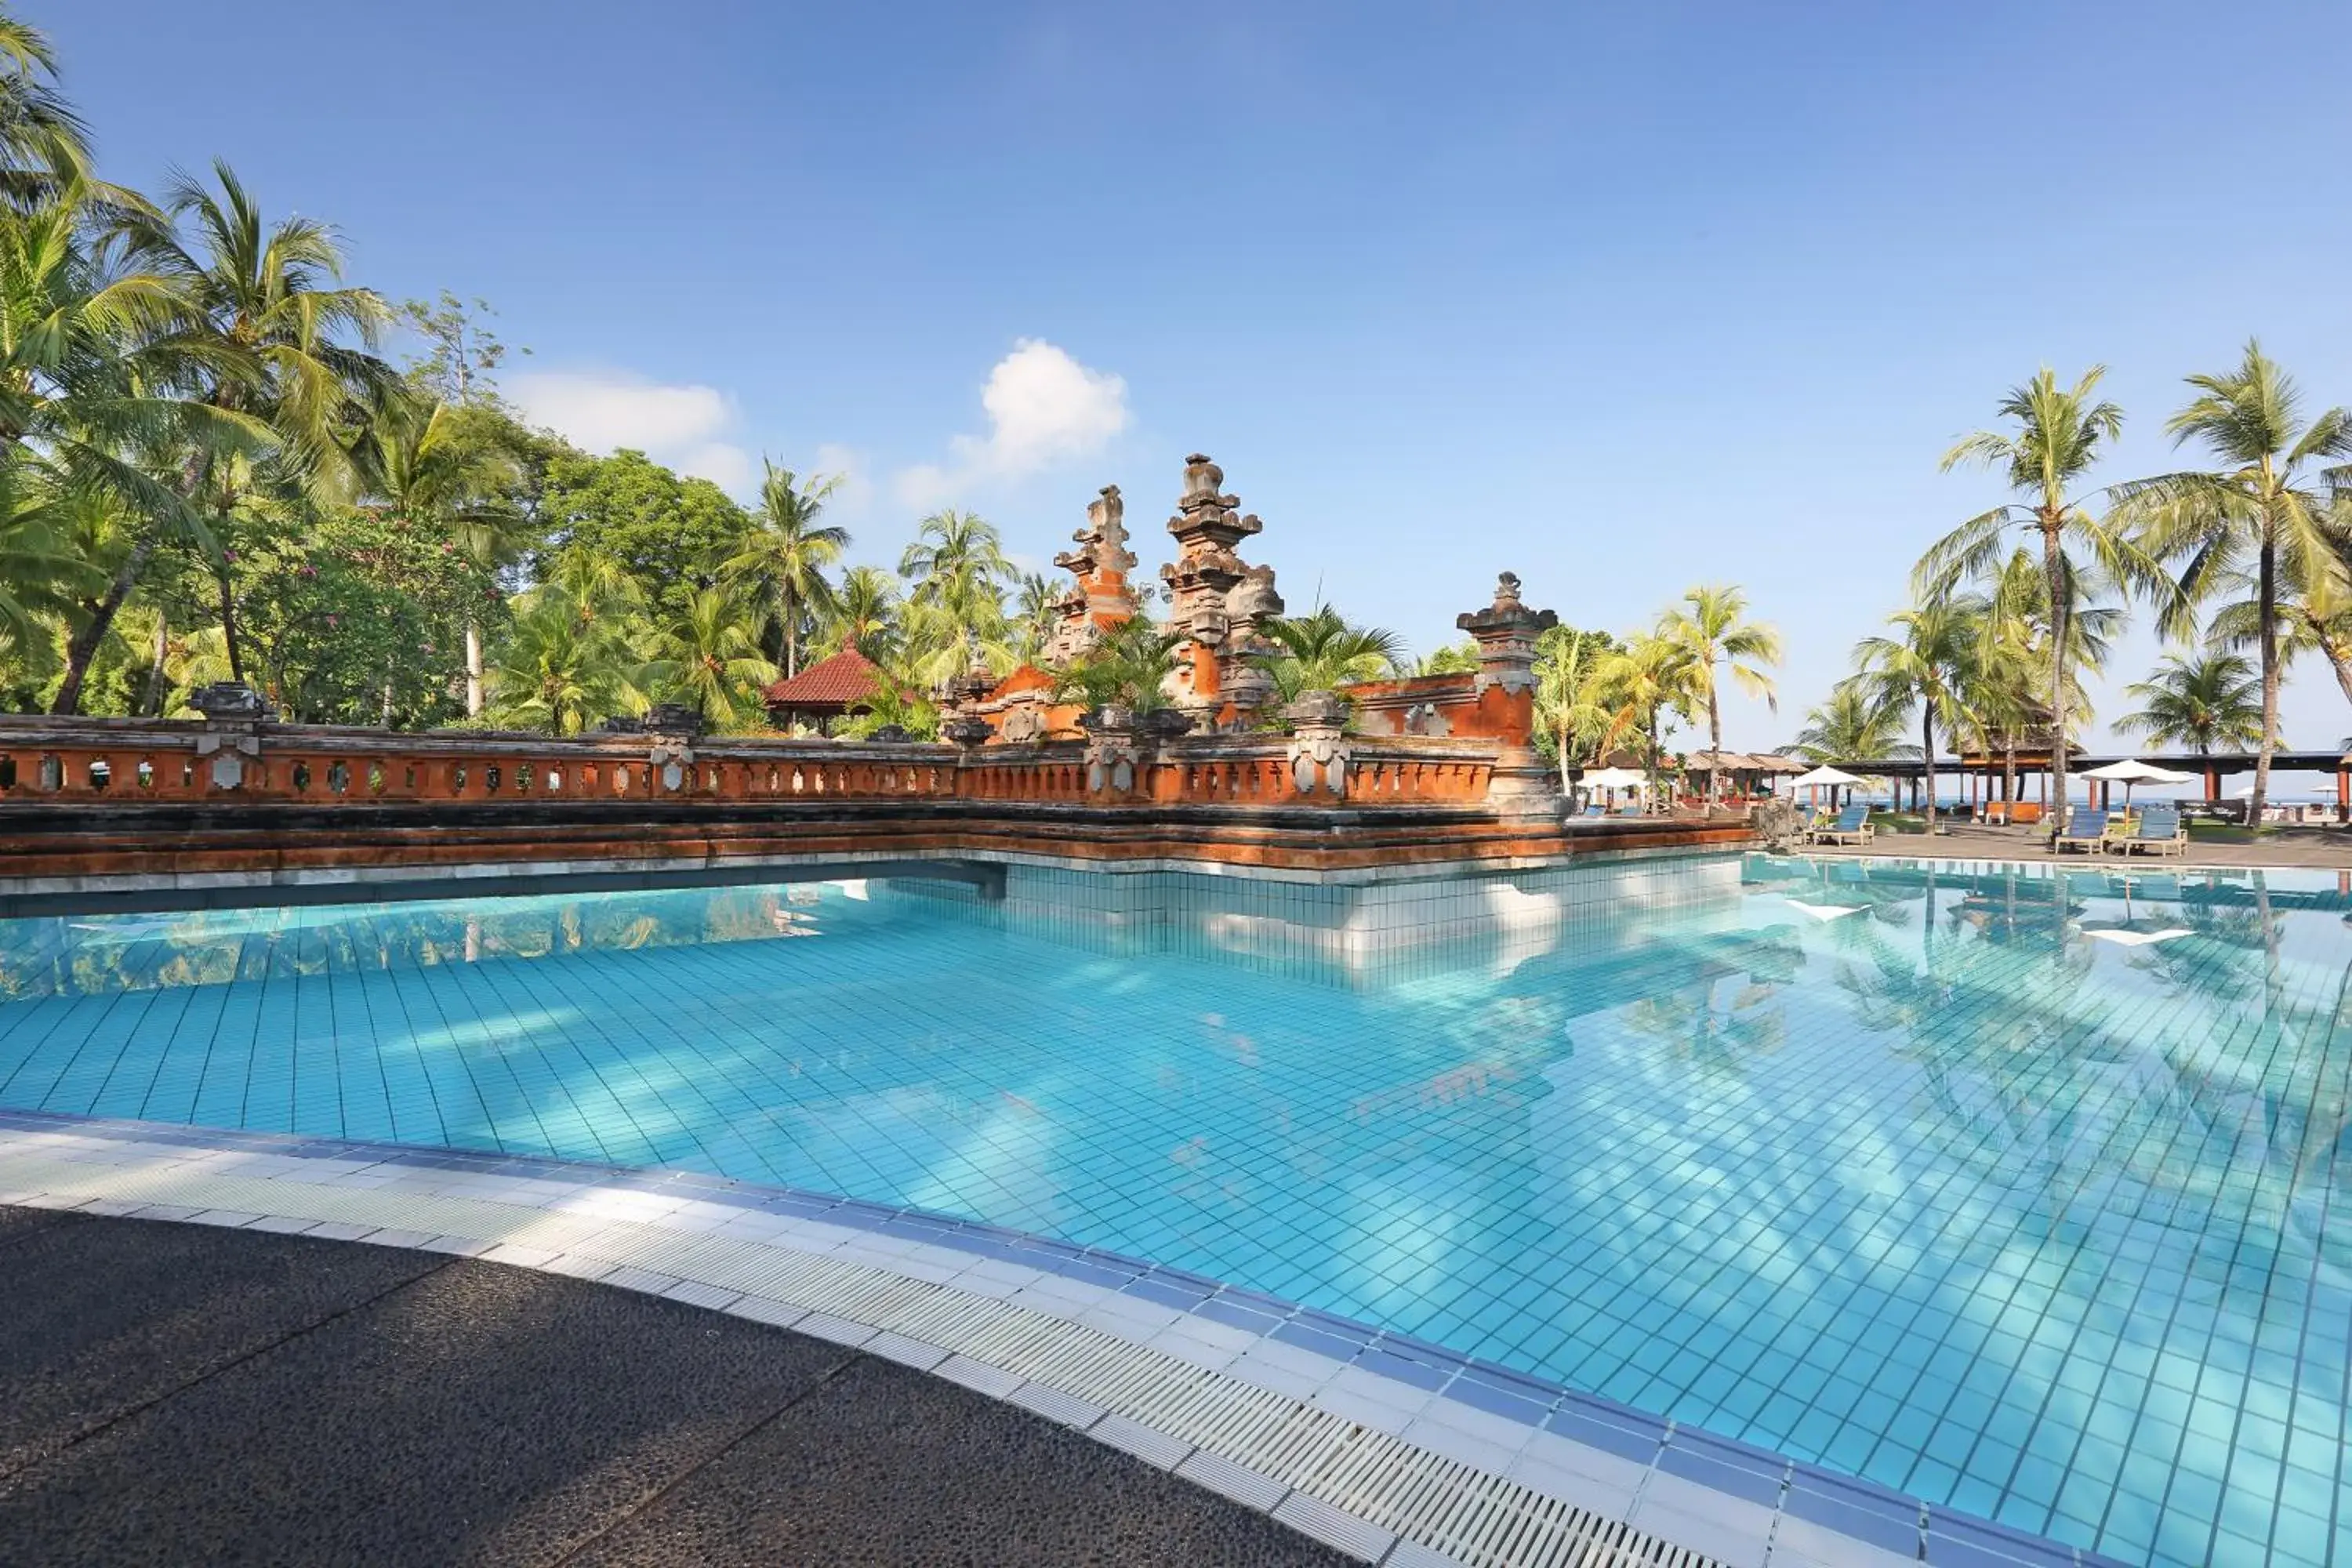 Swimming Pool in Bintang Bali Resort